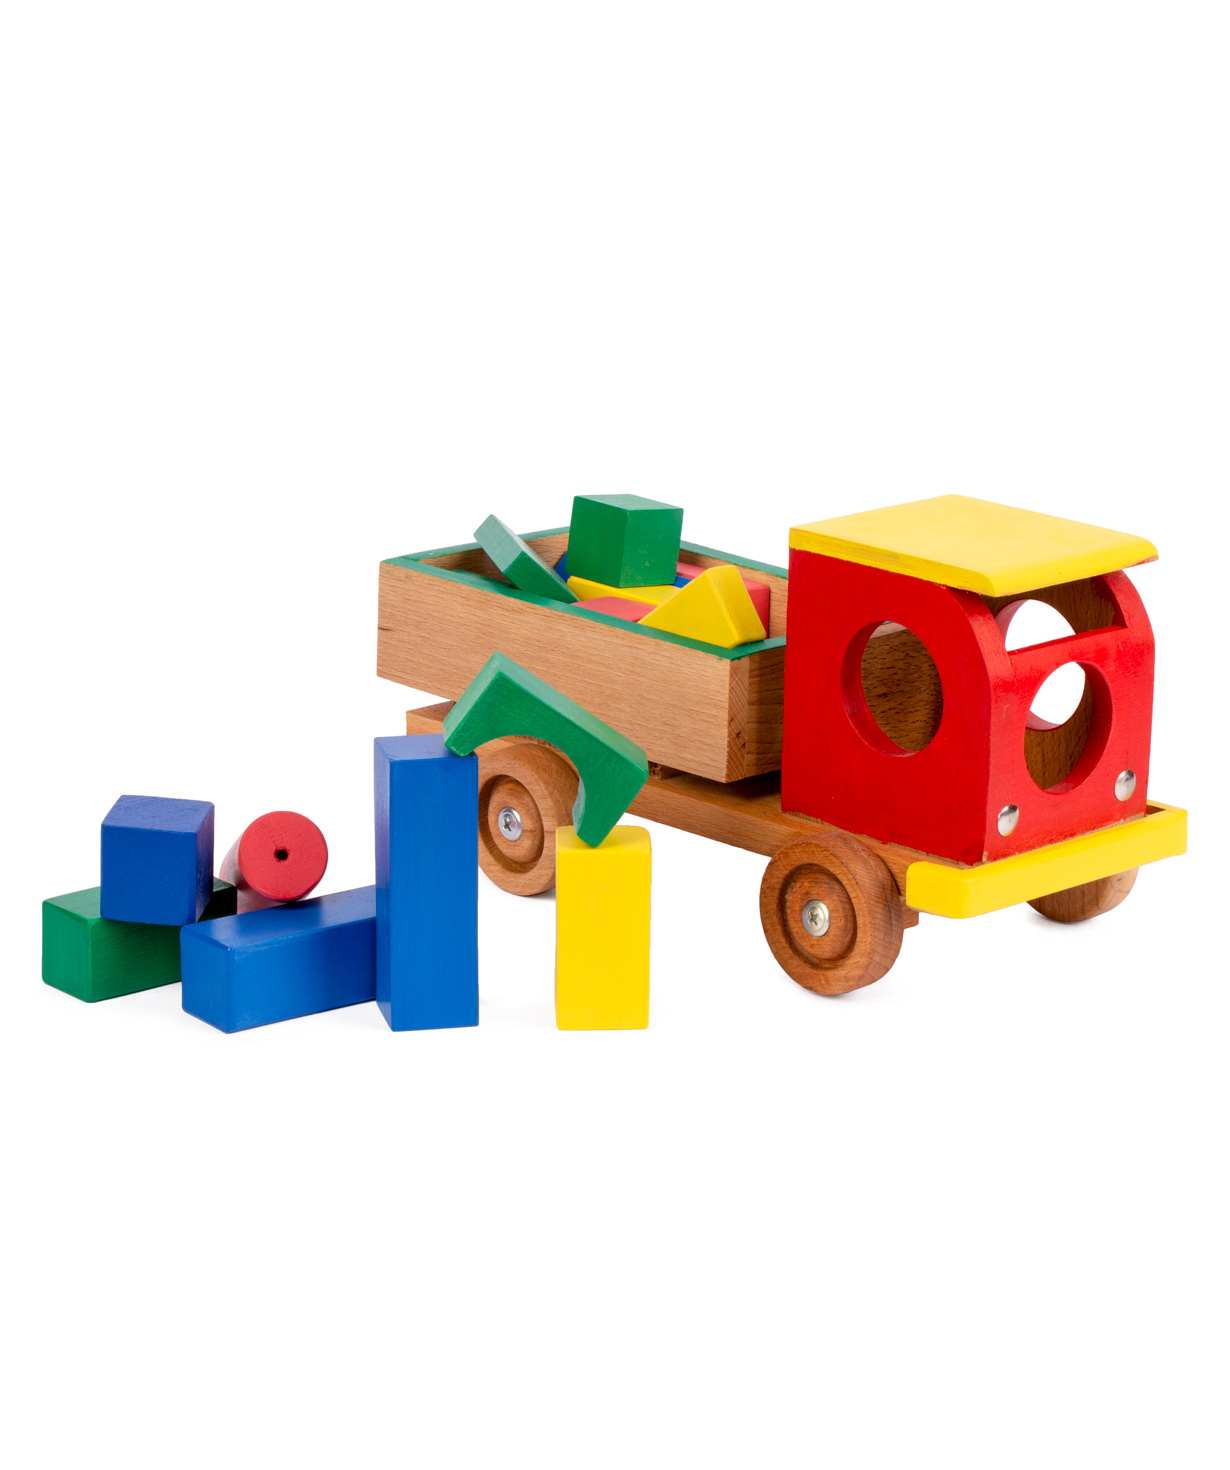 Խաղալիք «I'm wooden toys» կոնստրուկտոր- մեքենա